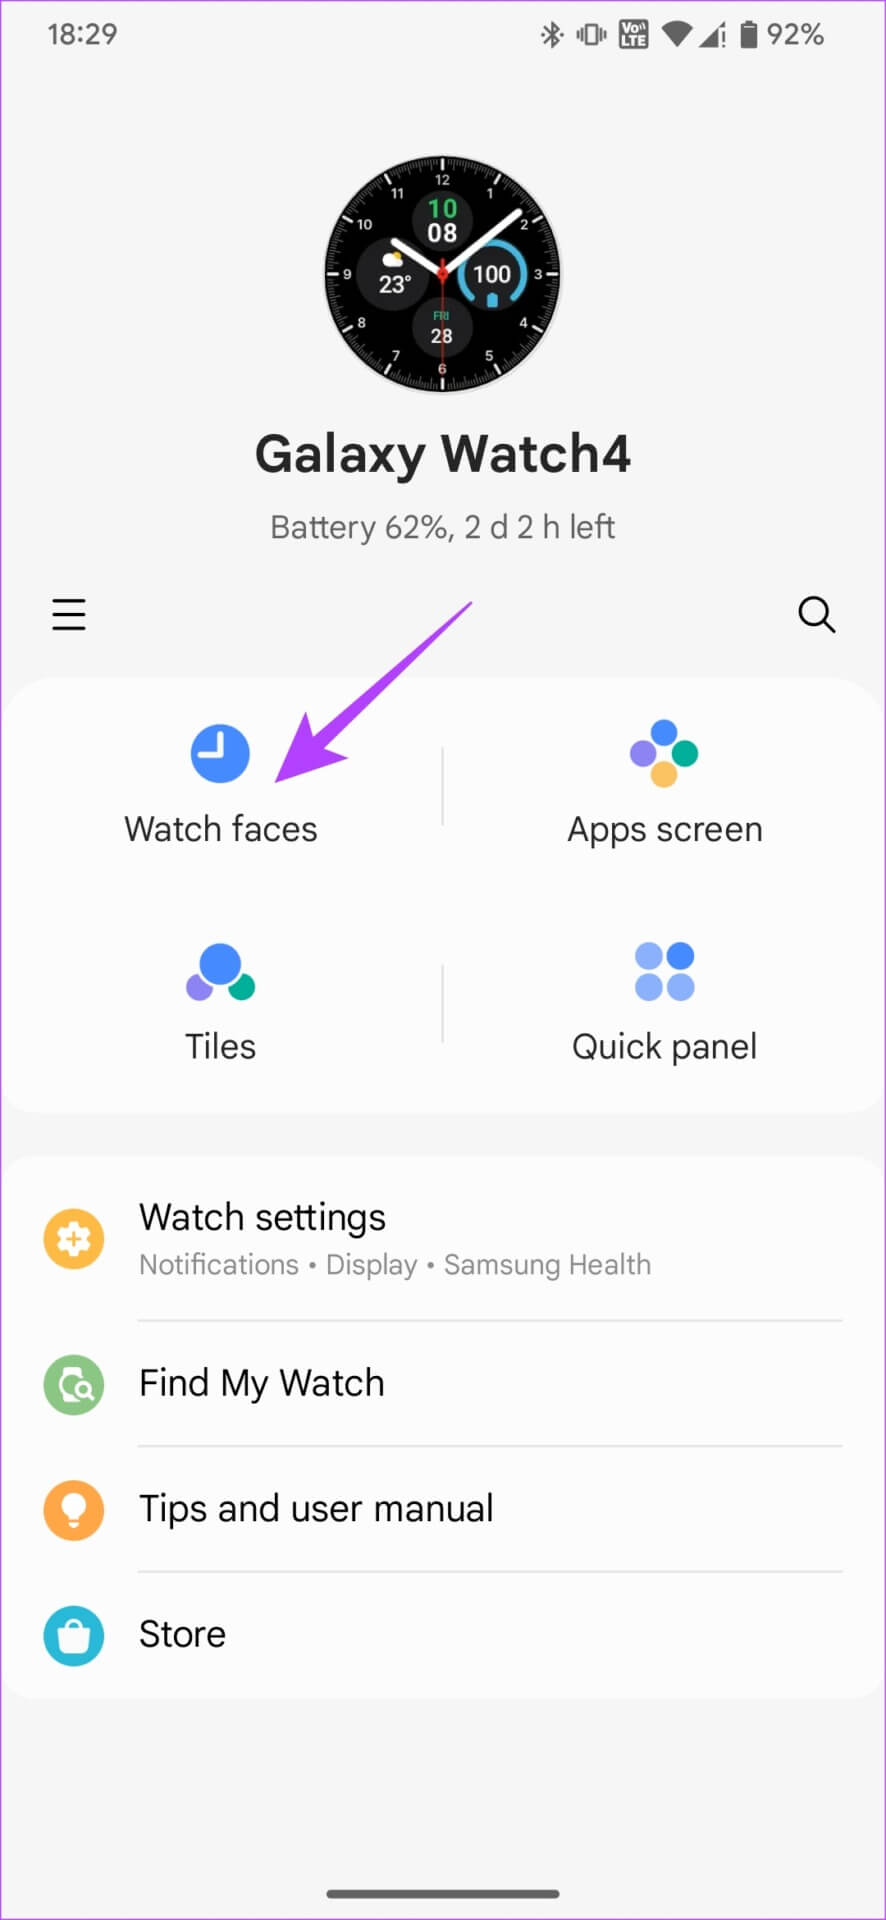 كيفية الحصول على Google Pixel Watch Faces على Samsung Galaxy Watch - %categories